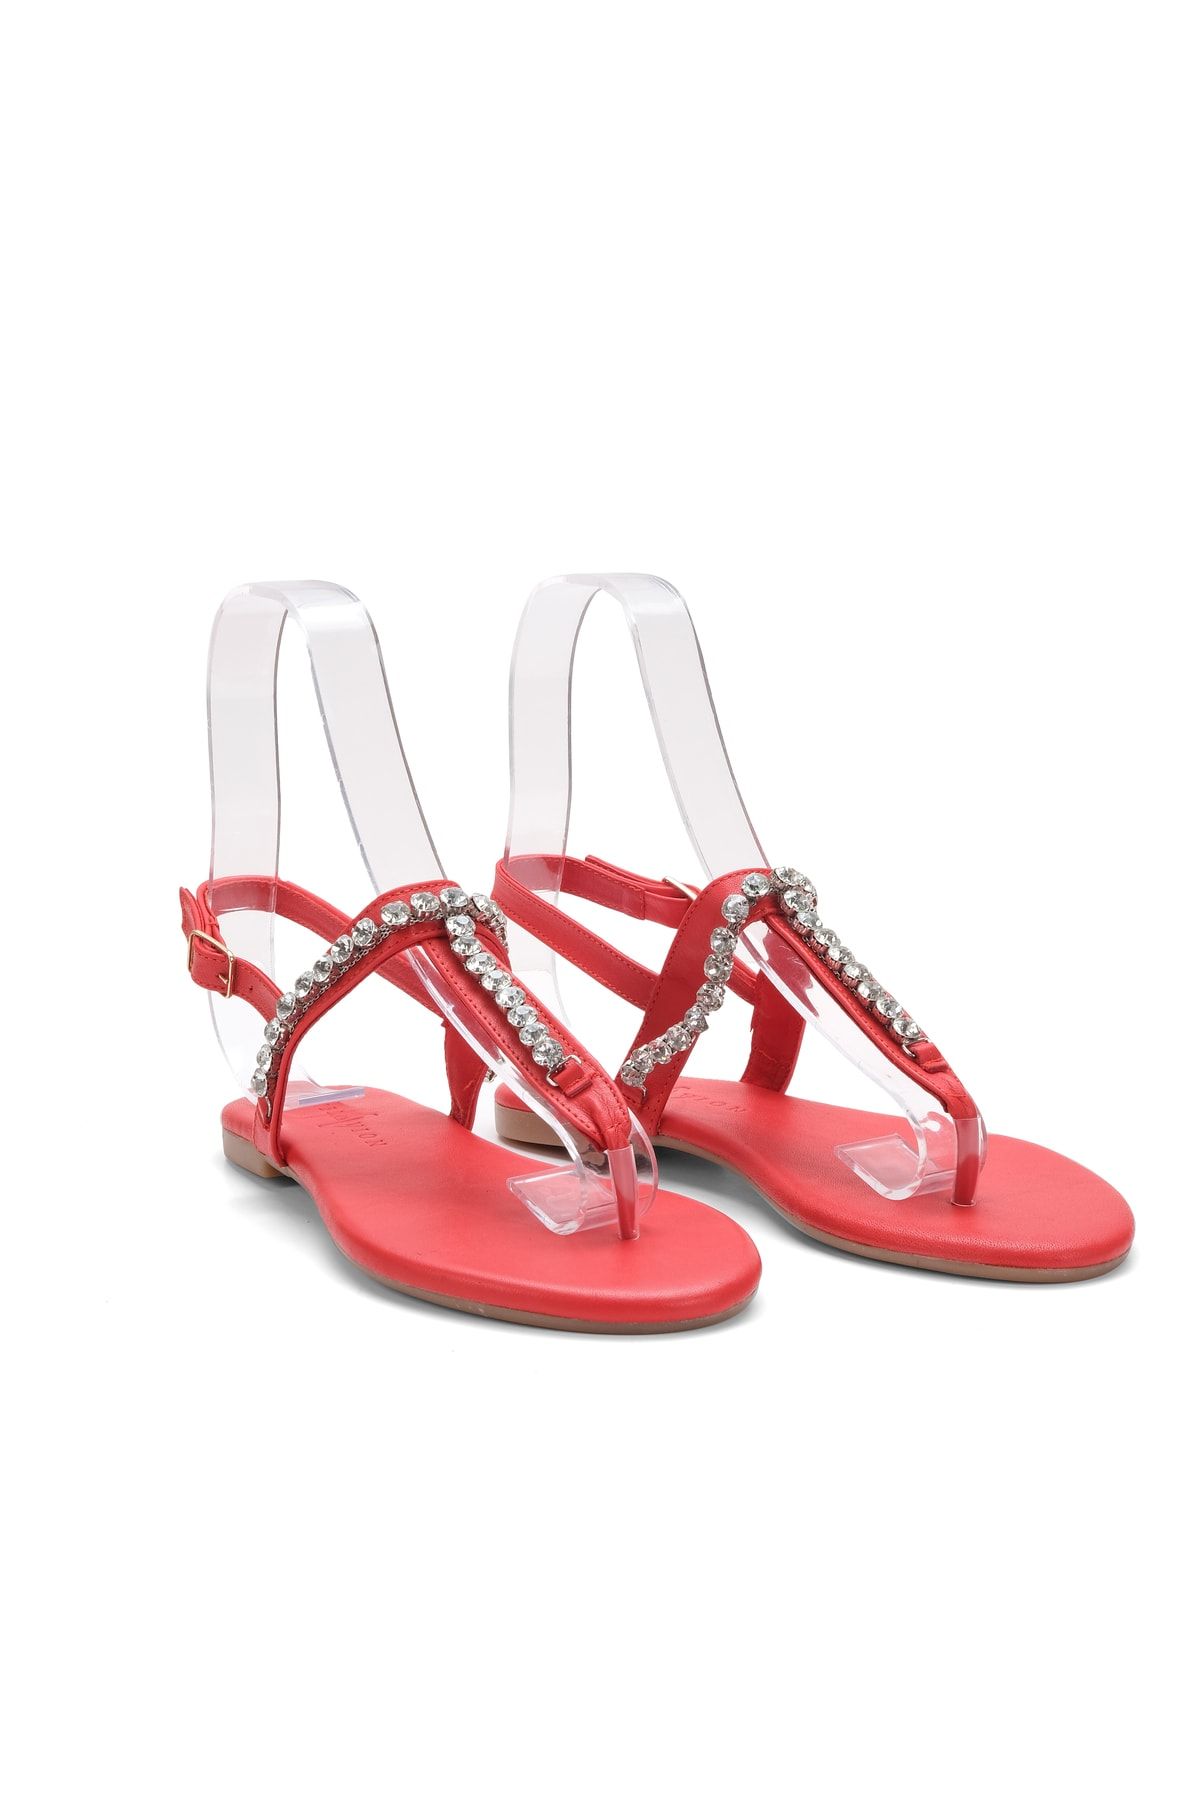 Oblavion Lavion Yeni Sezon Hakiki Deri Kırmızı Yuvarlık Taşlı Günlük Kadın Sandalet